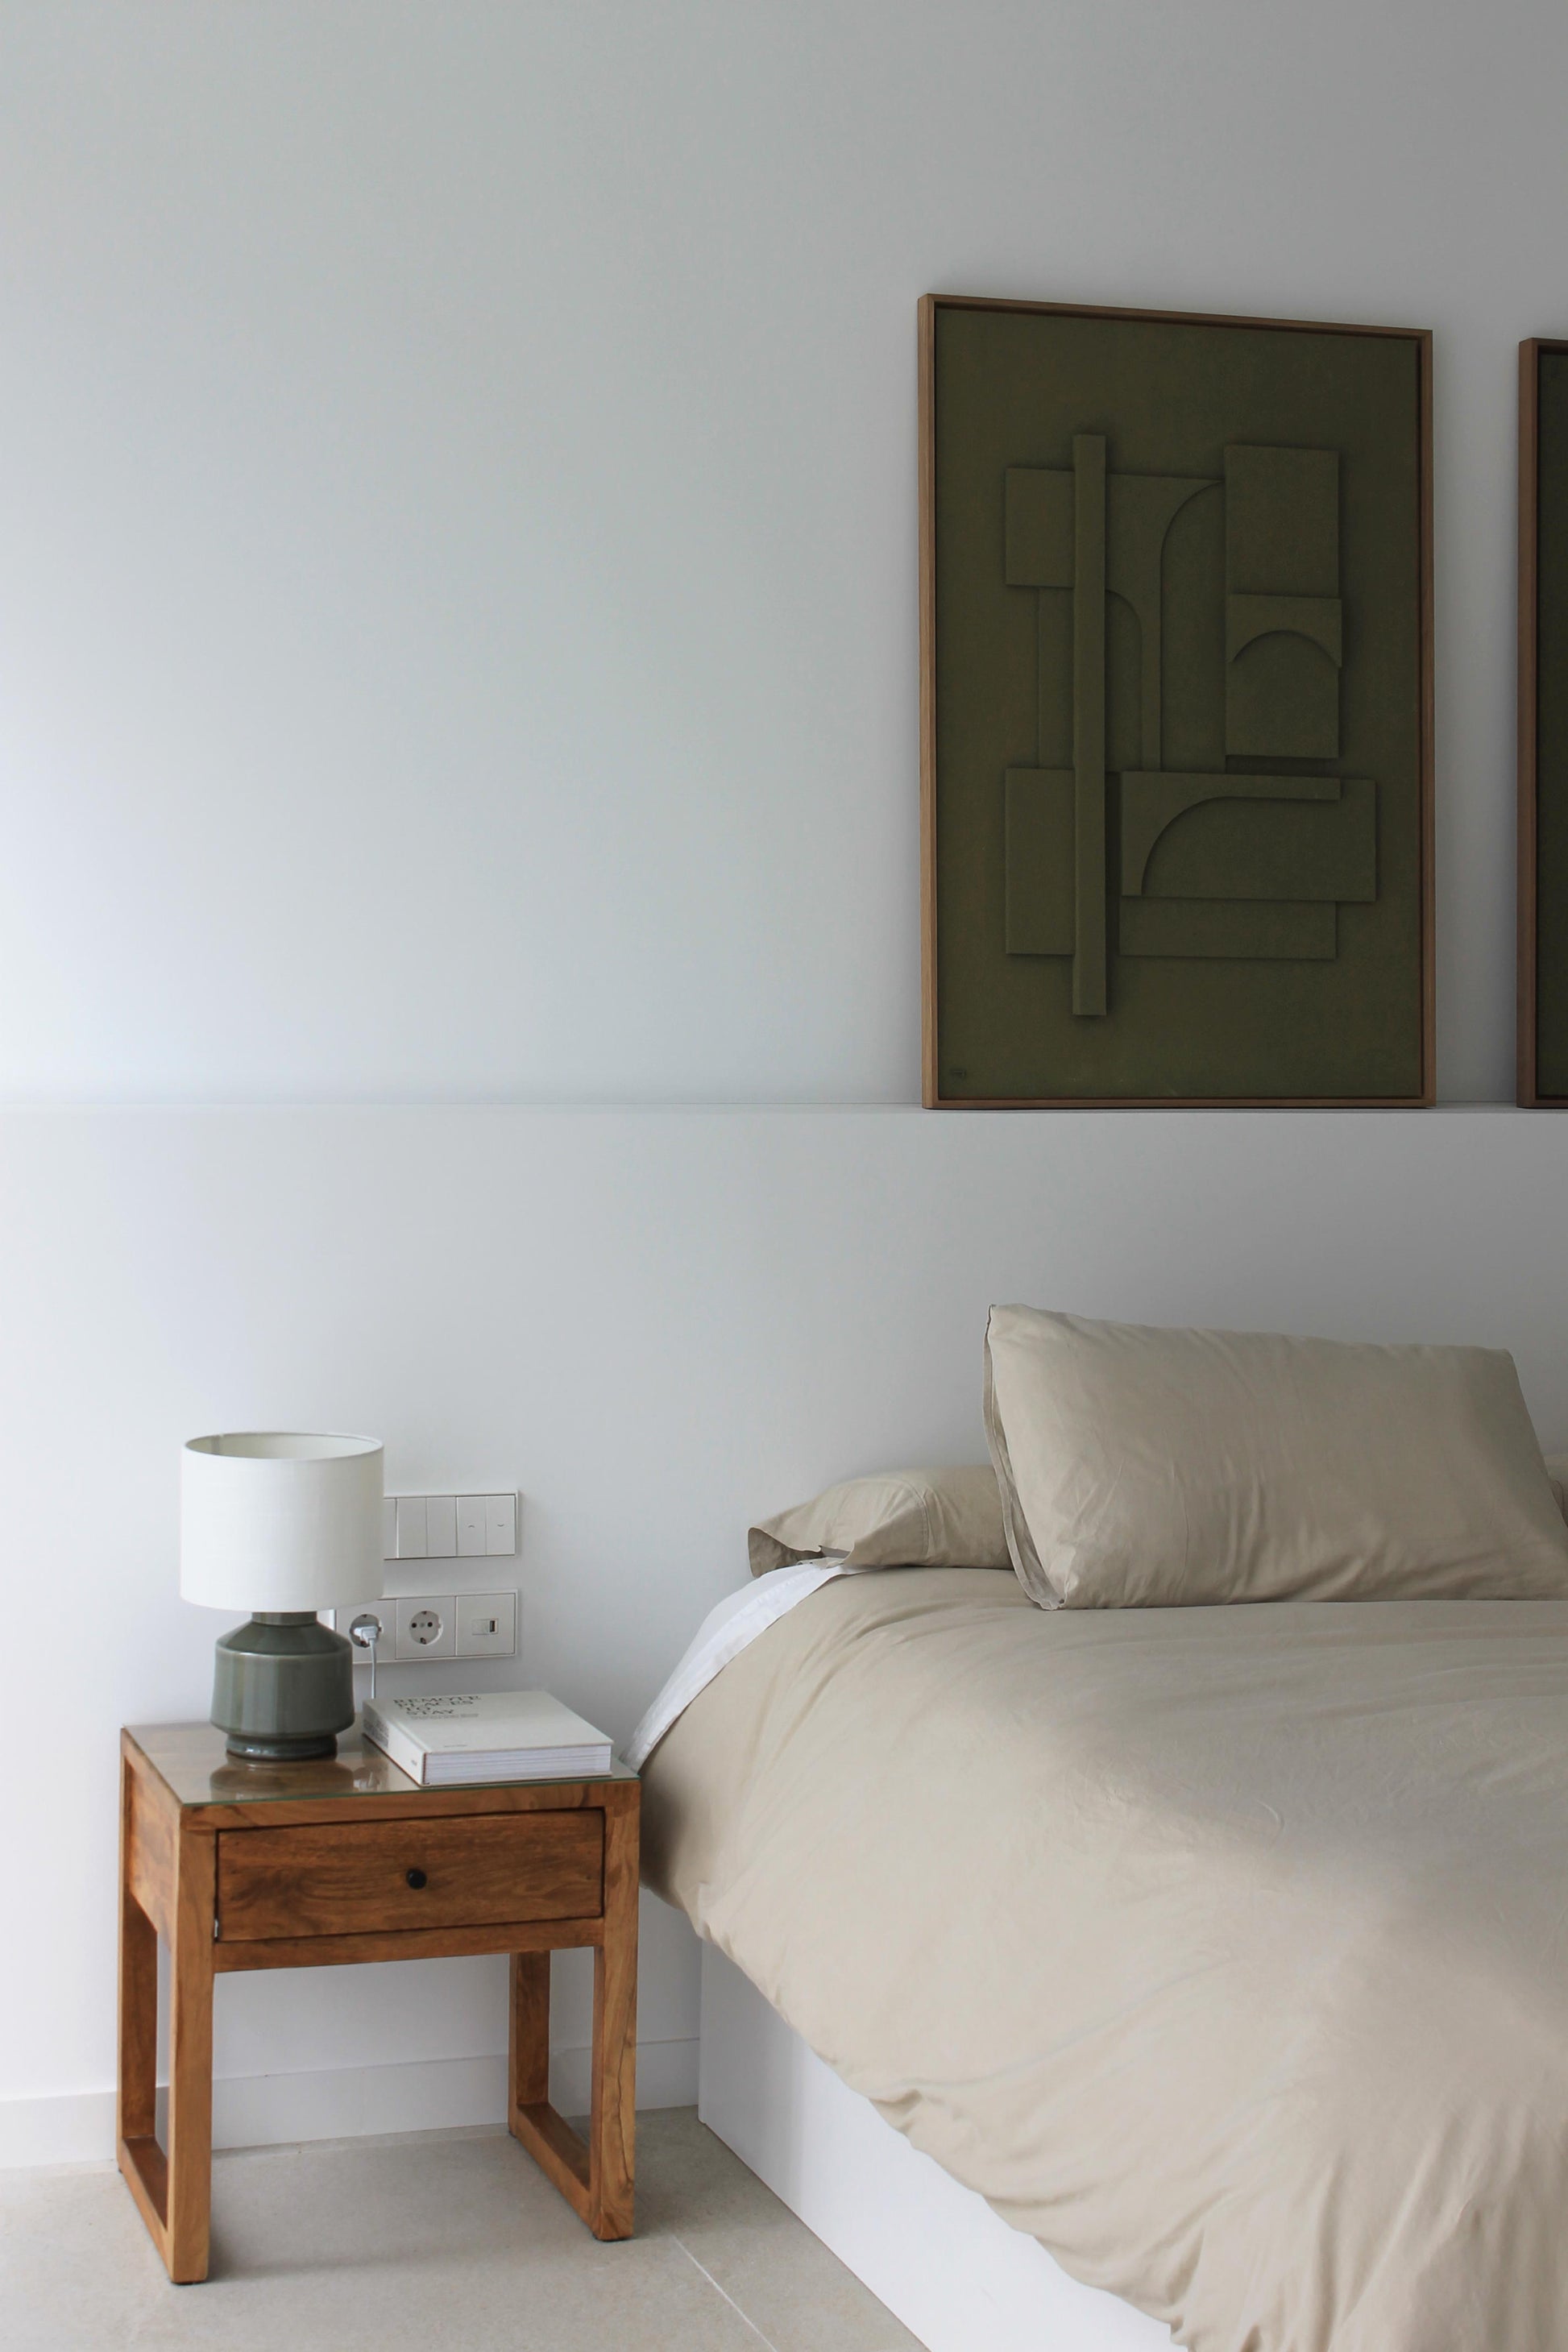 Cuadro grande original en color verde oliva por la artista valenciana: Teresa Darocas. Fotografía en un dormitorio de estilo mediterráneo.